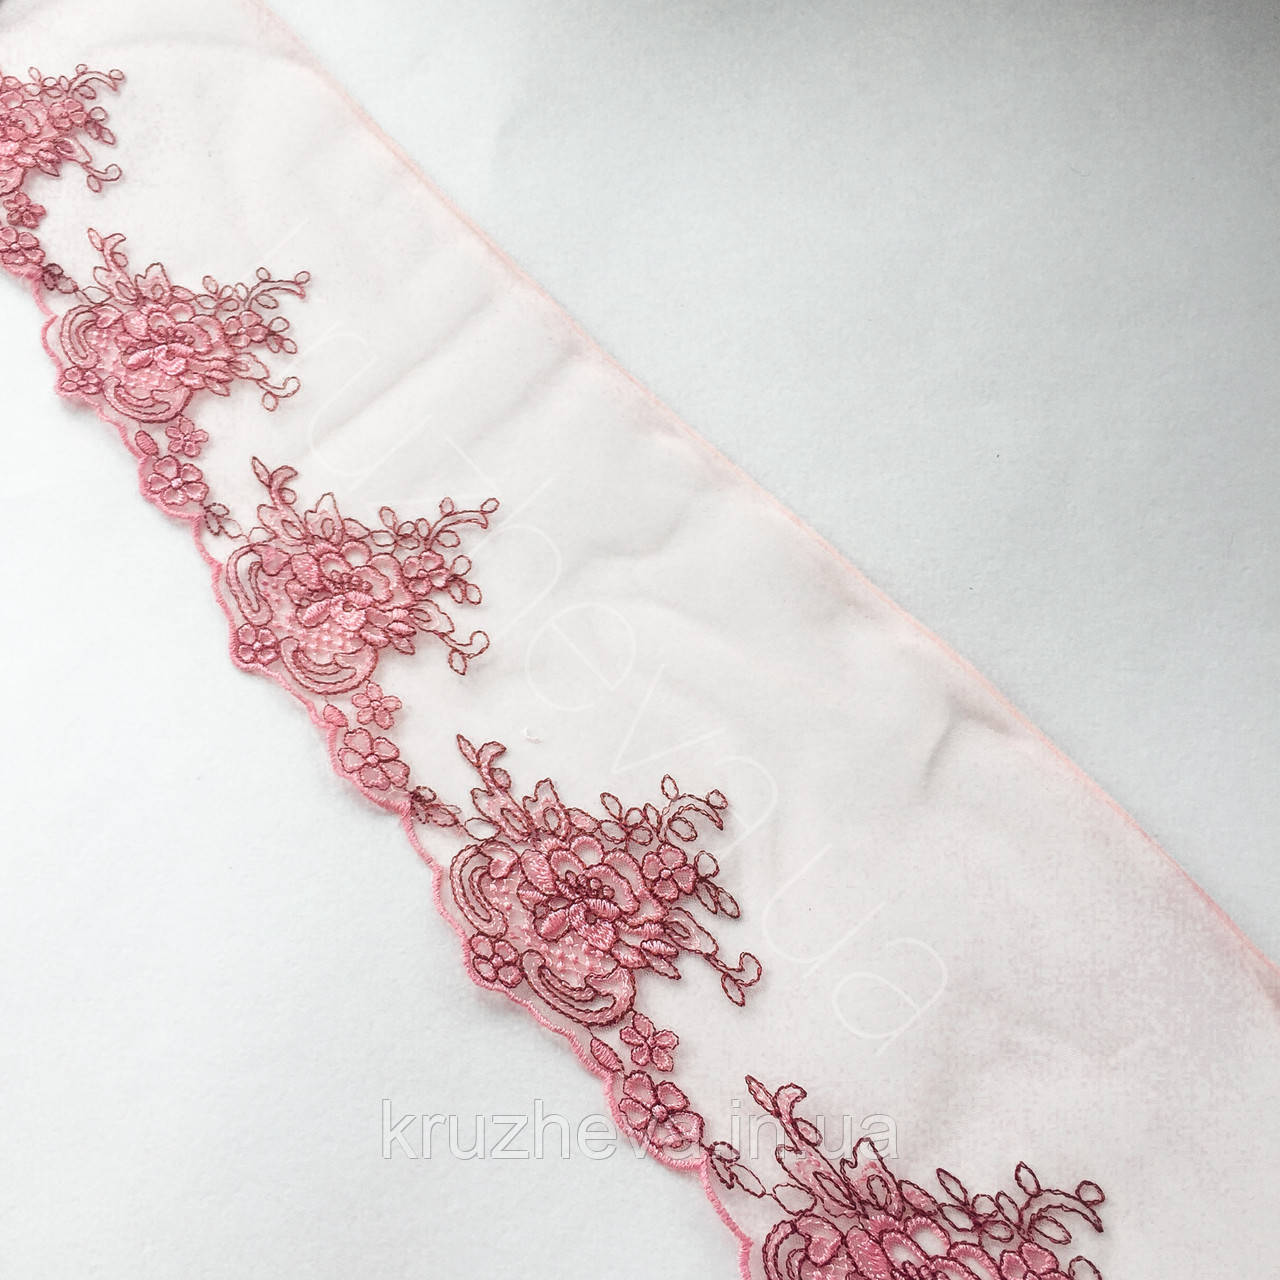 Ажурне мереживо, вишивка на сітці: рожева, коричнева нитка по рожевій сітці, ширина 12 см